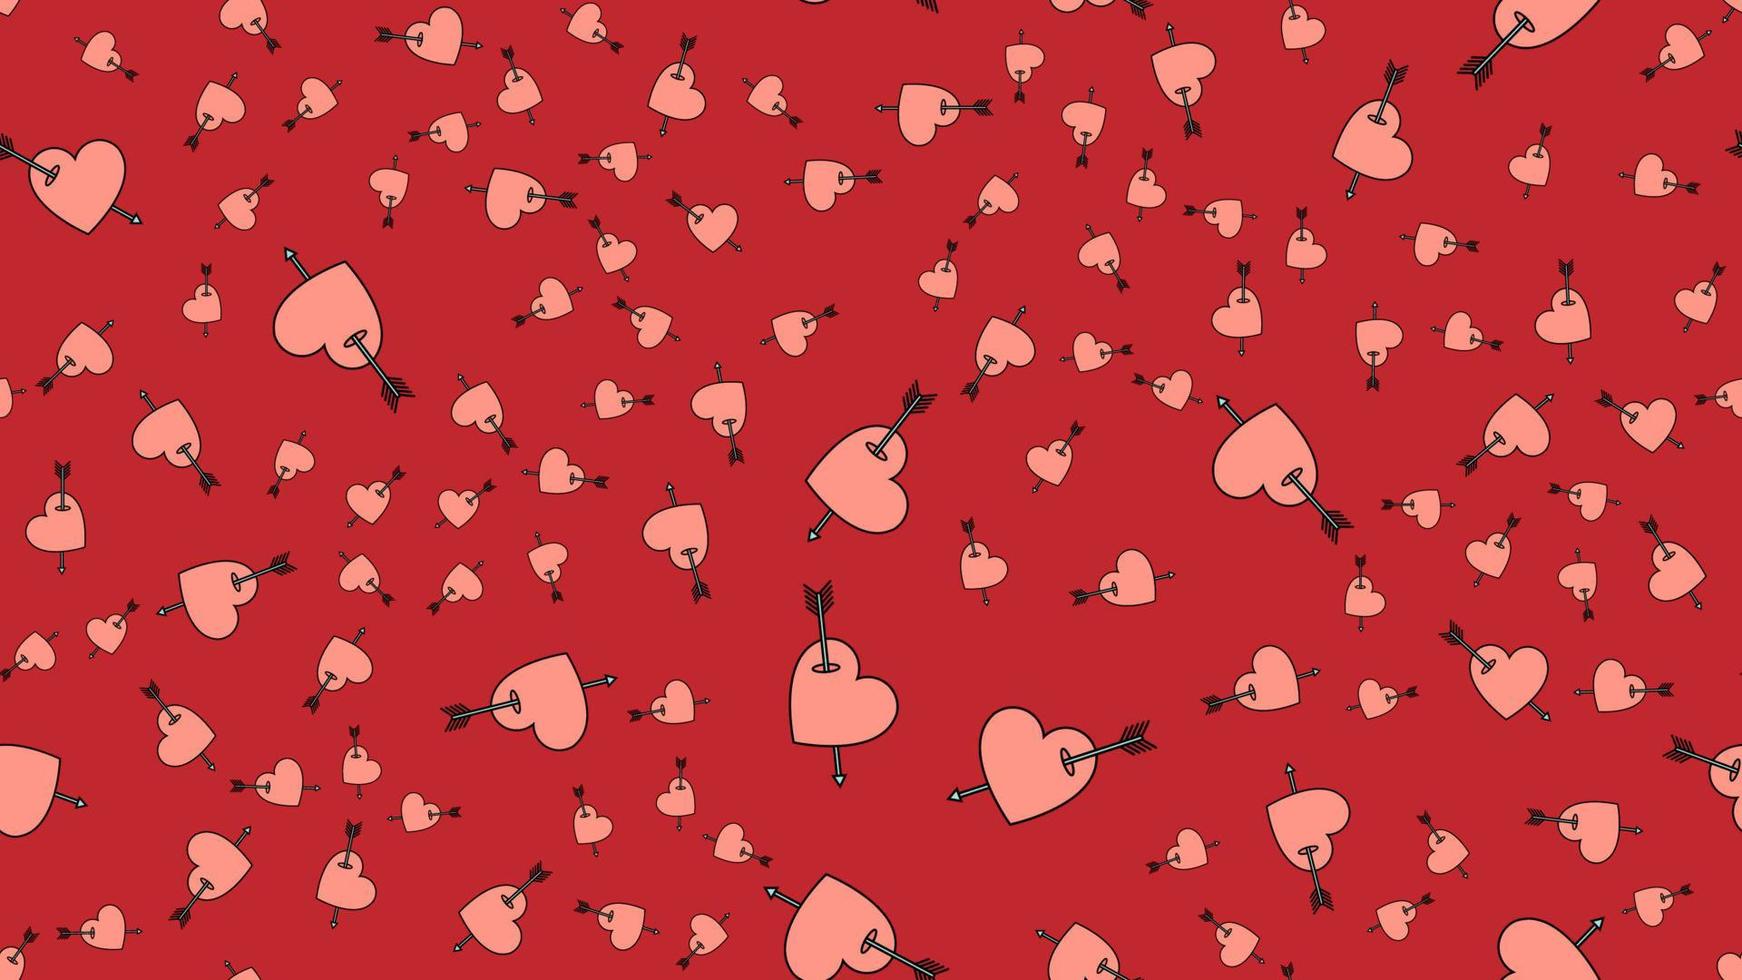 texture motif harmonieux sans fin à partir d'icônes plates de coeurs avec des flèches, objets d'amour pour les vacances de l'amour saint valentin le 14 février ou le 8 mars sur fond rouge. illustration vectorielle vecteur